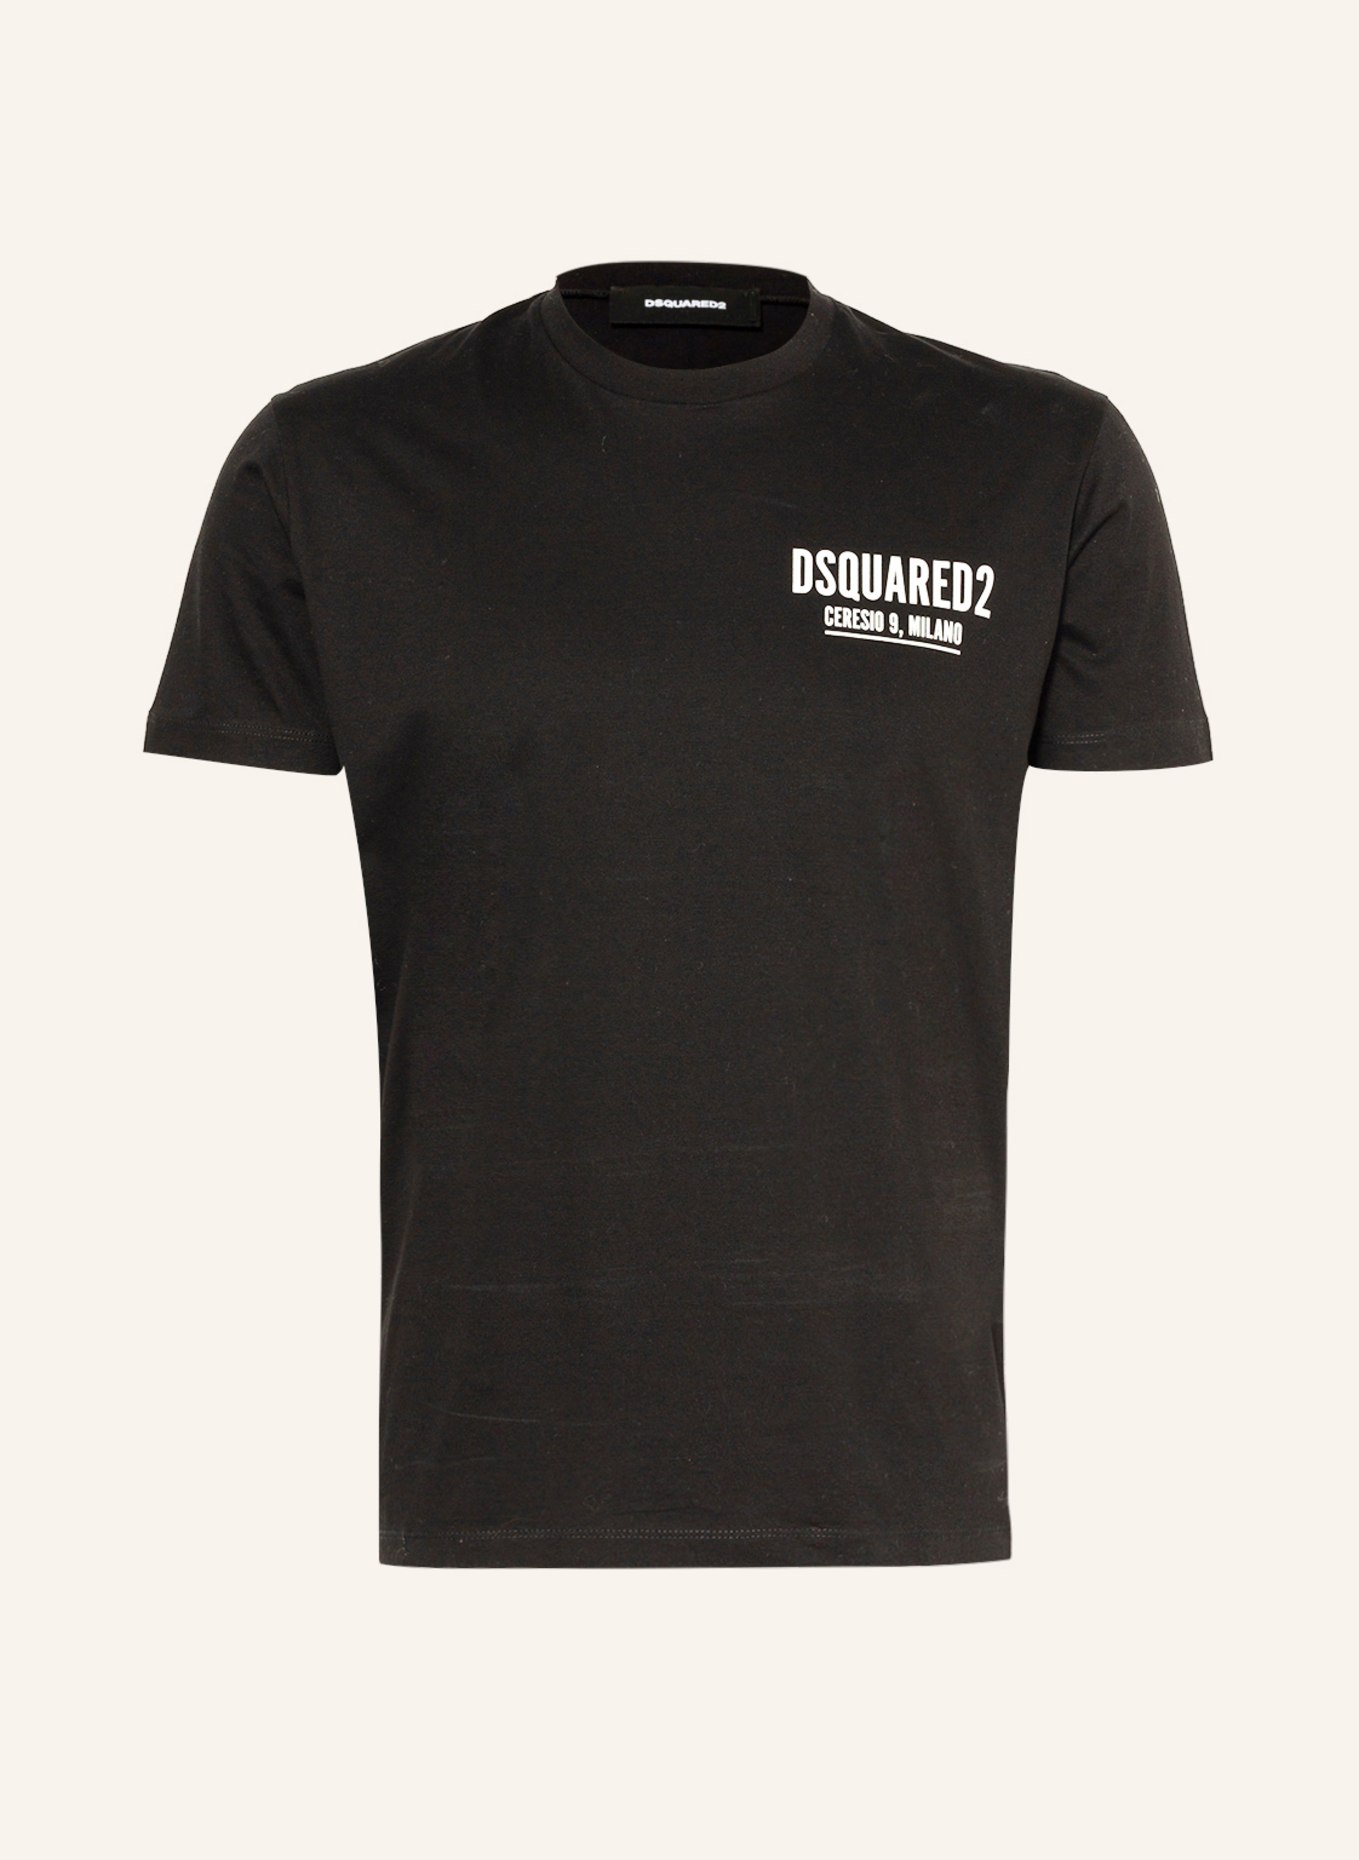 DSQUARED2 T-Shirt CERESIO 9 , Farbe: SCHWARZ/ WEISS (Bild 1)